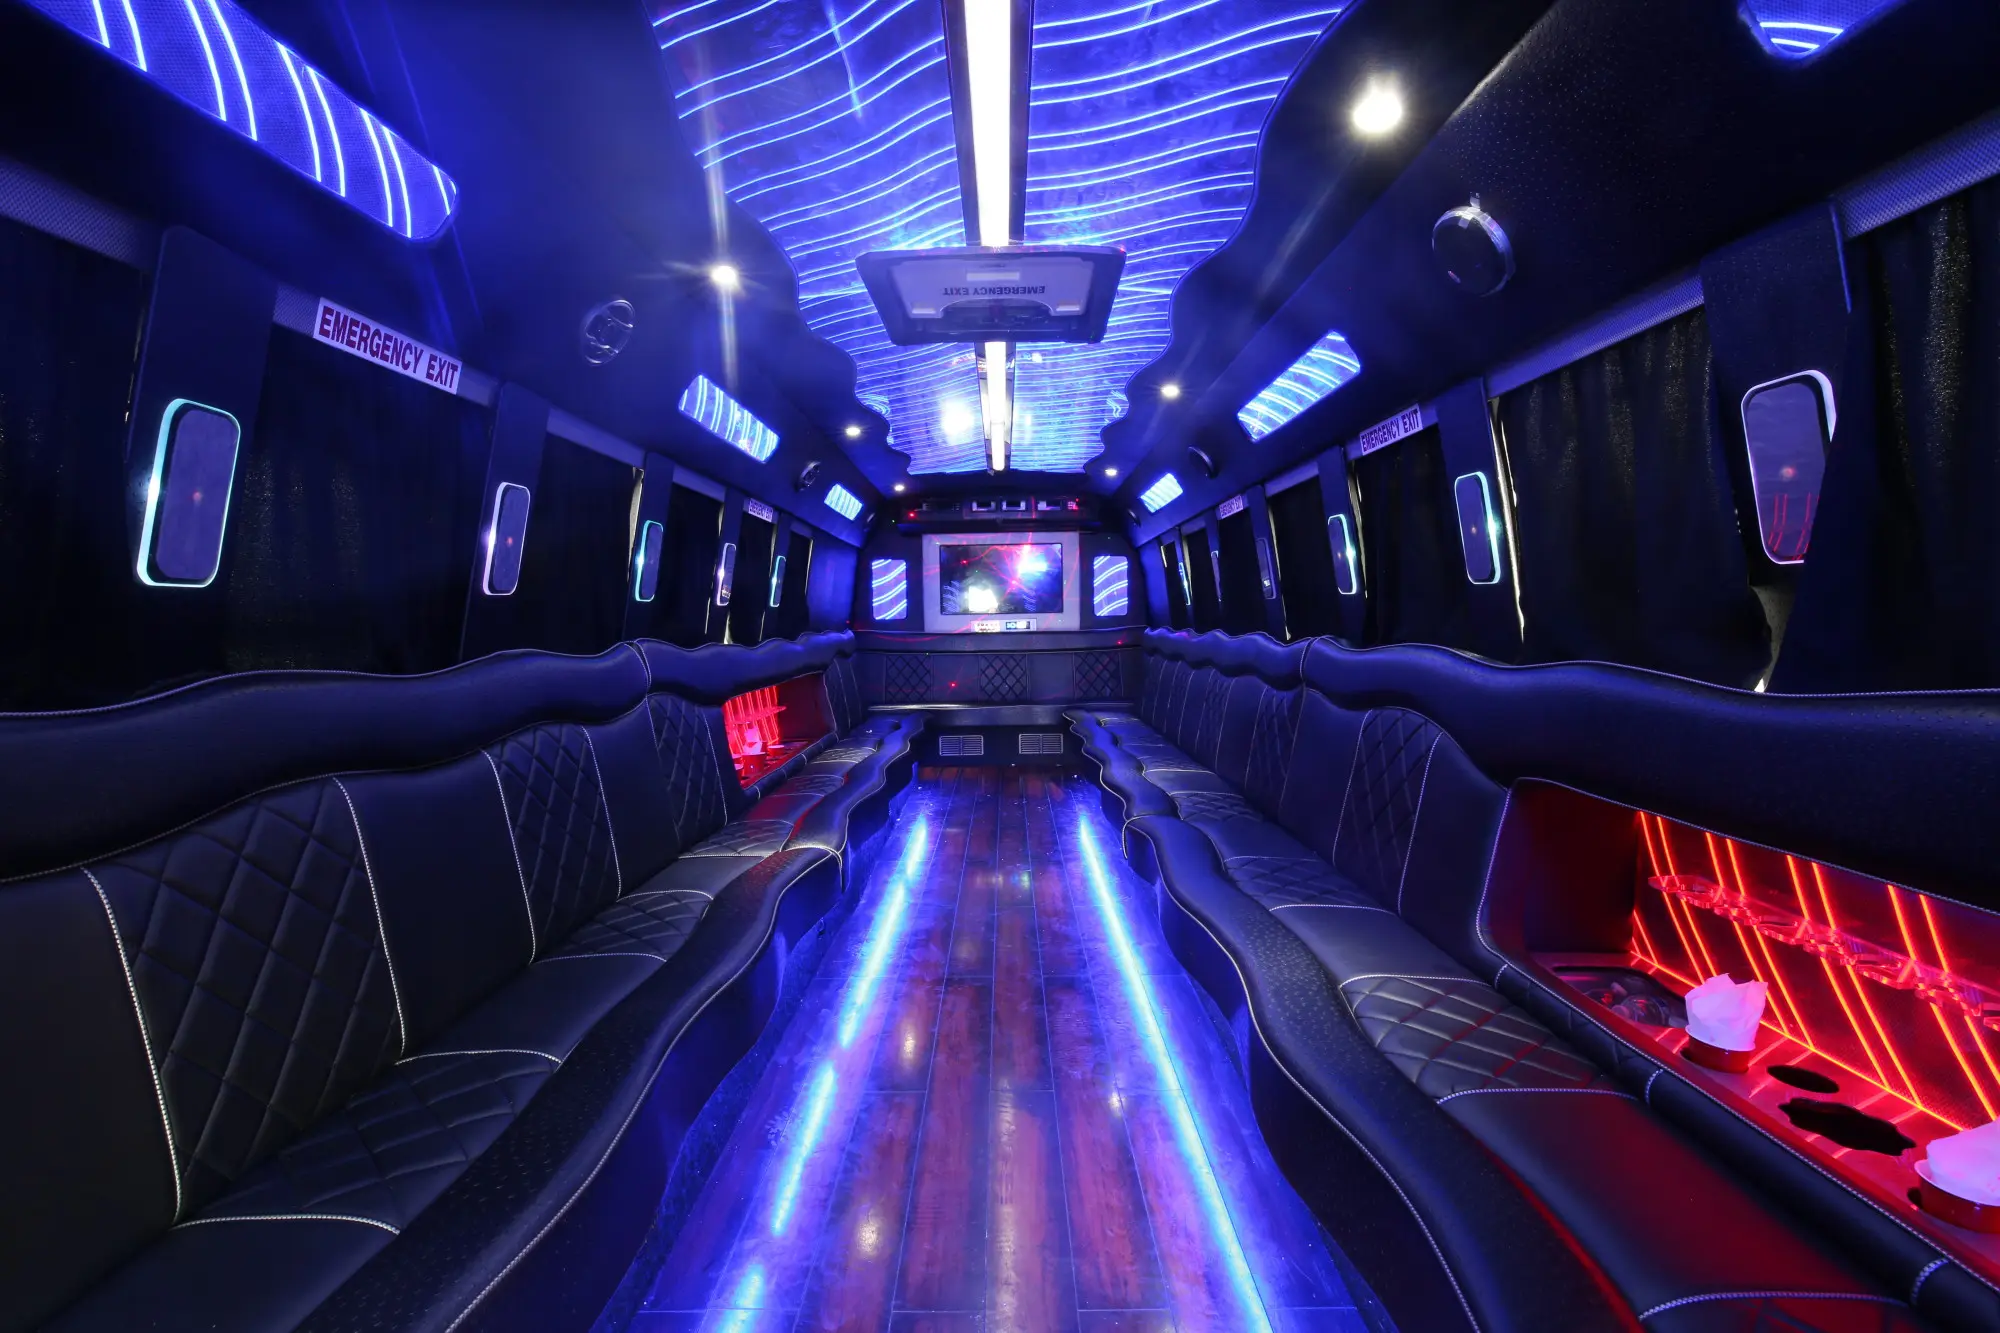 San Antonio Party Bus